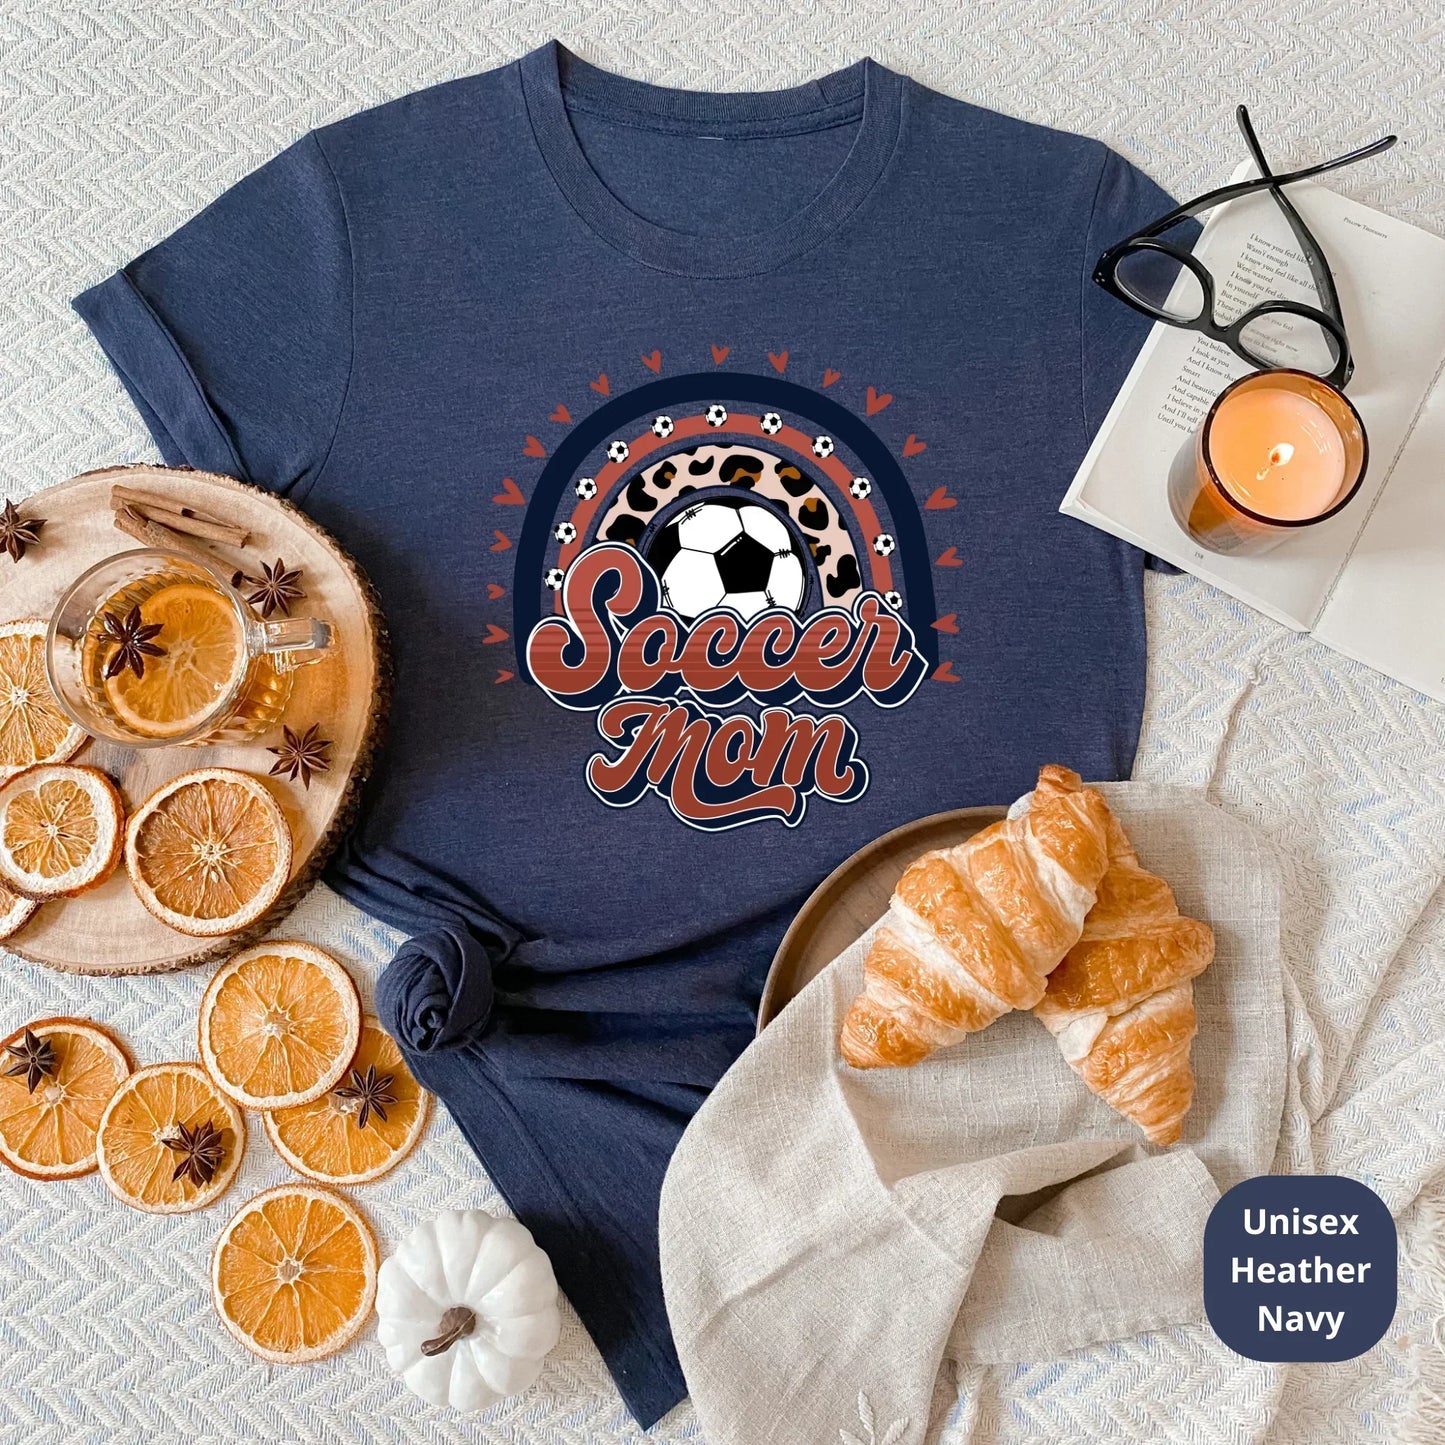 Soccer Mom Shirt, Soccer Ball T-shirt, Retro Soccer Mom HMDesignStudioUS